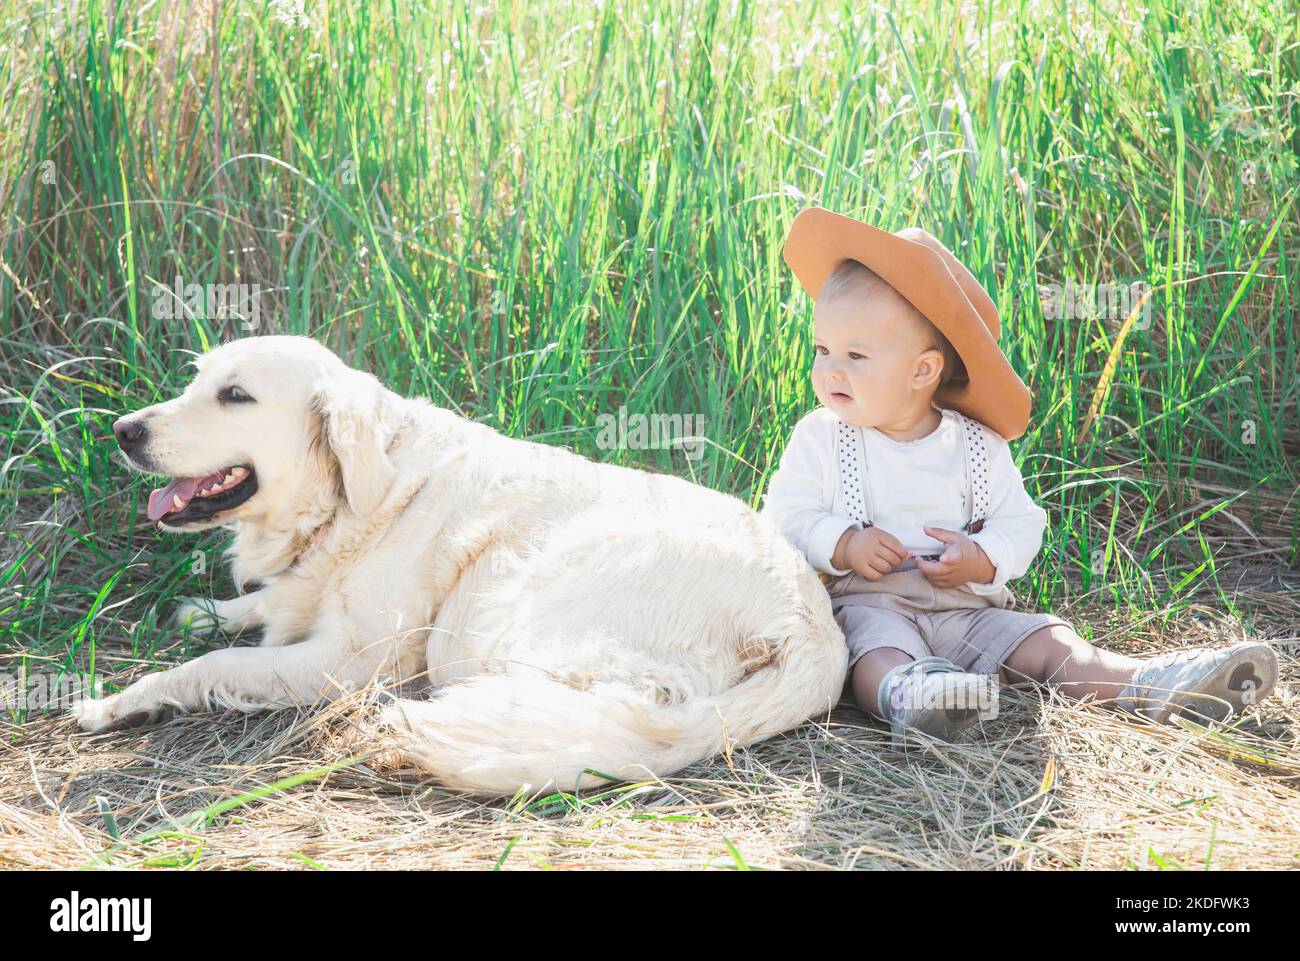 bel bambino in tuta con sospensori siede in erba con il cane Foto Stock